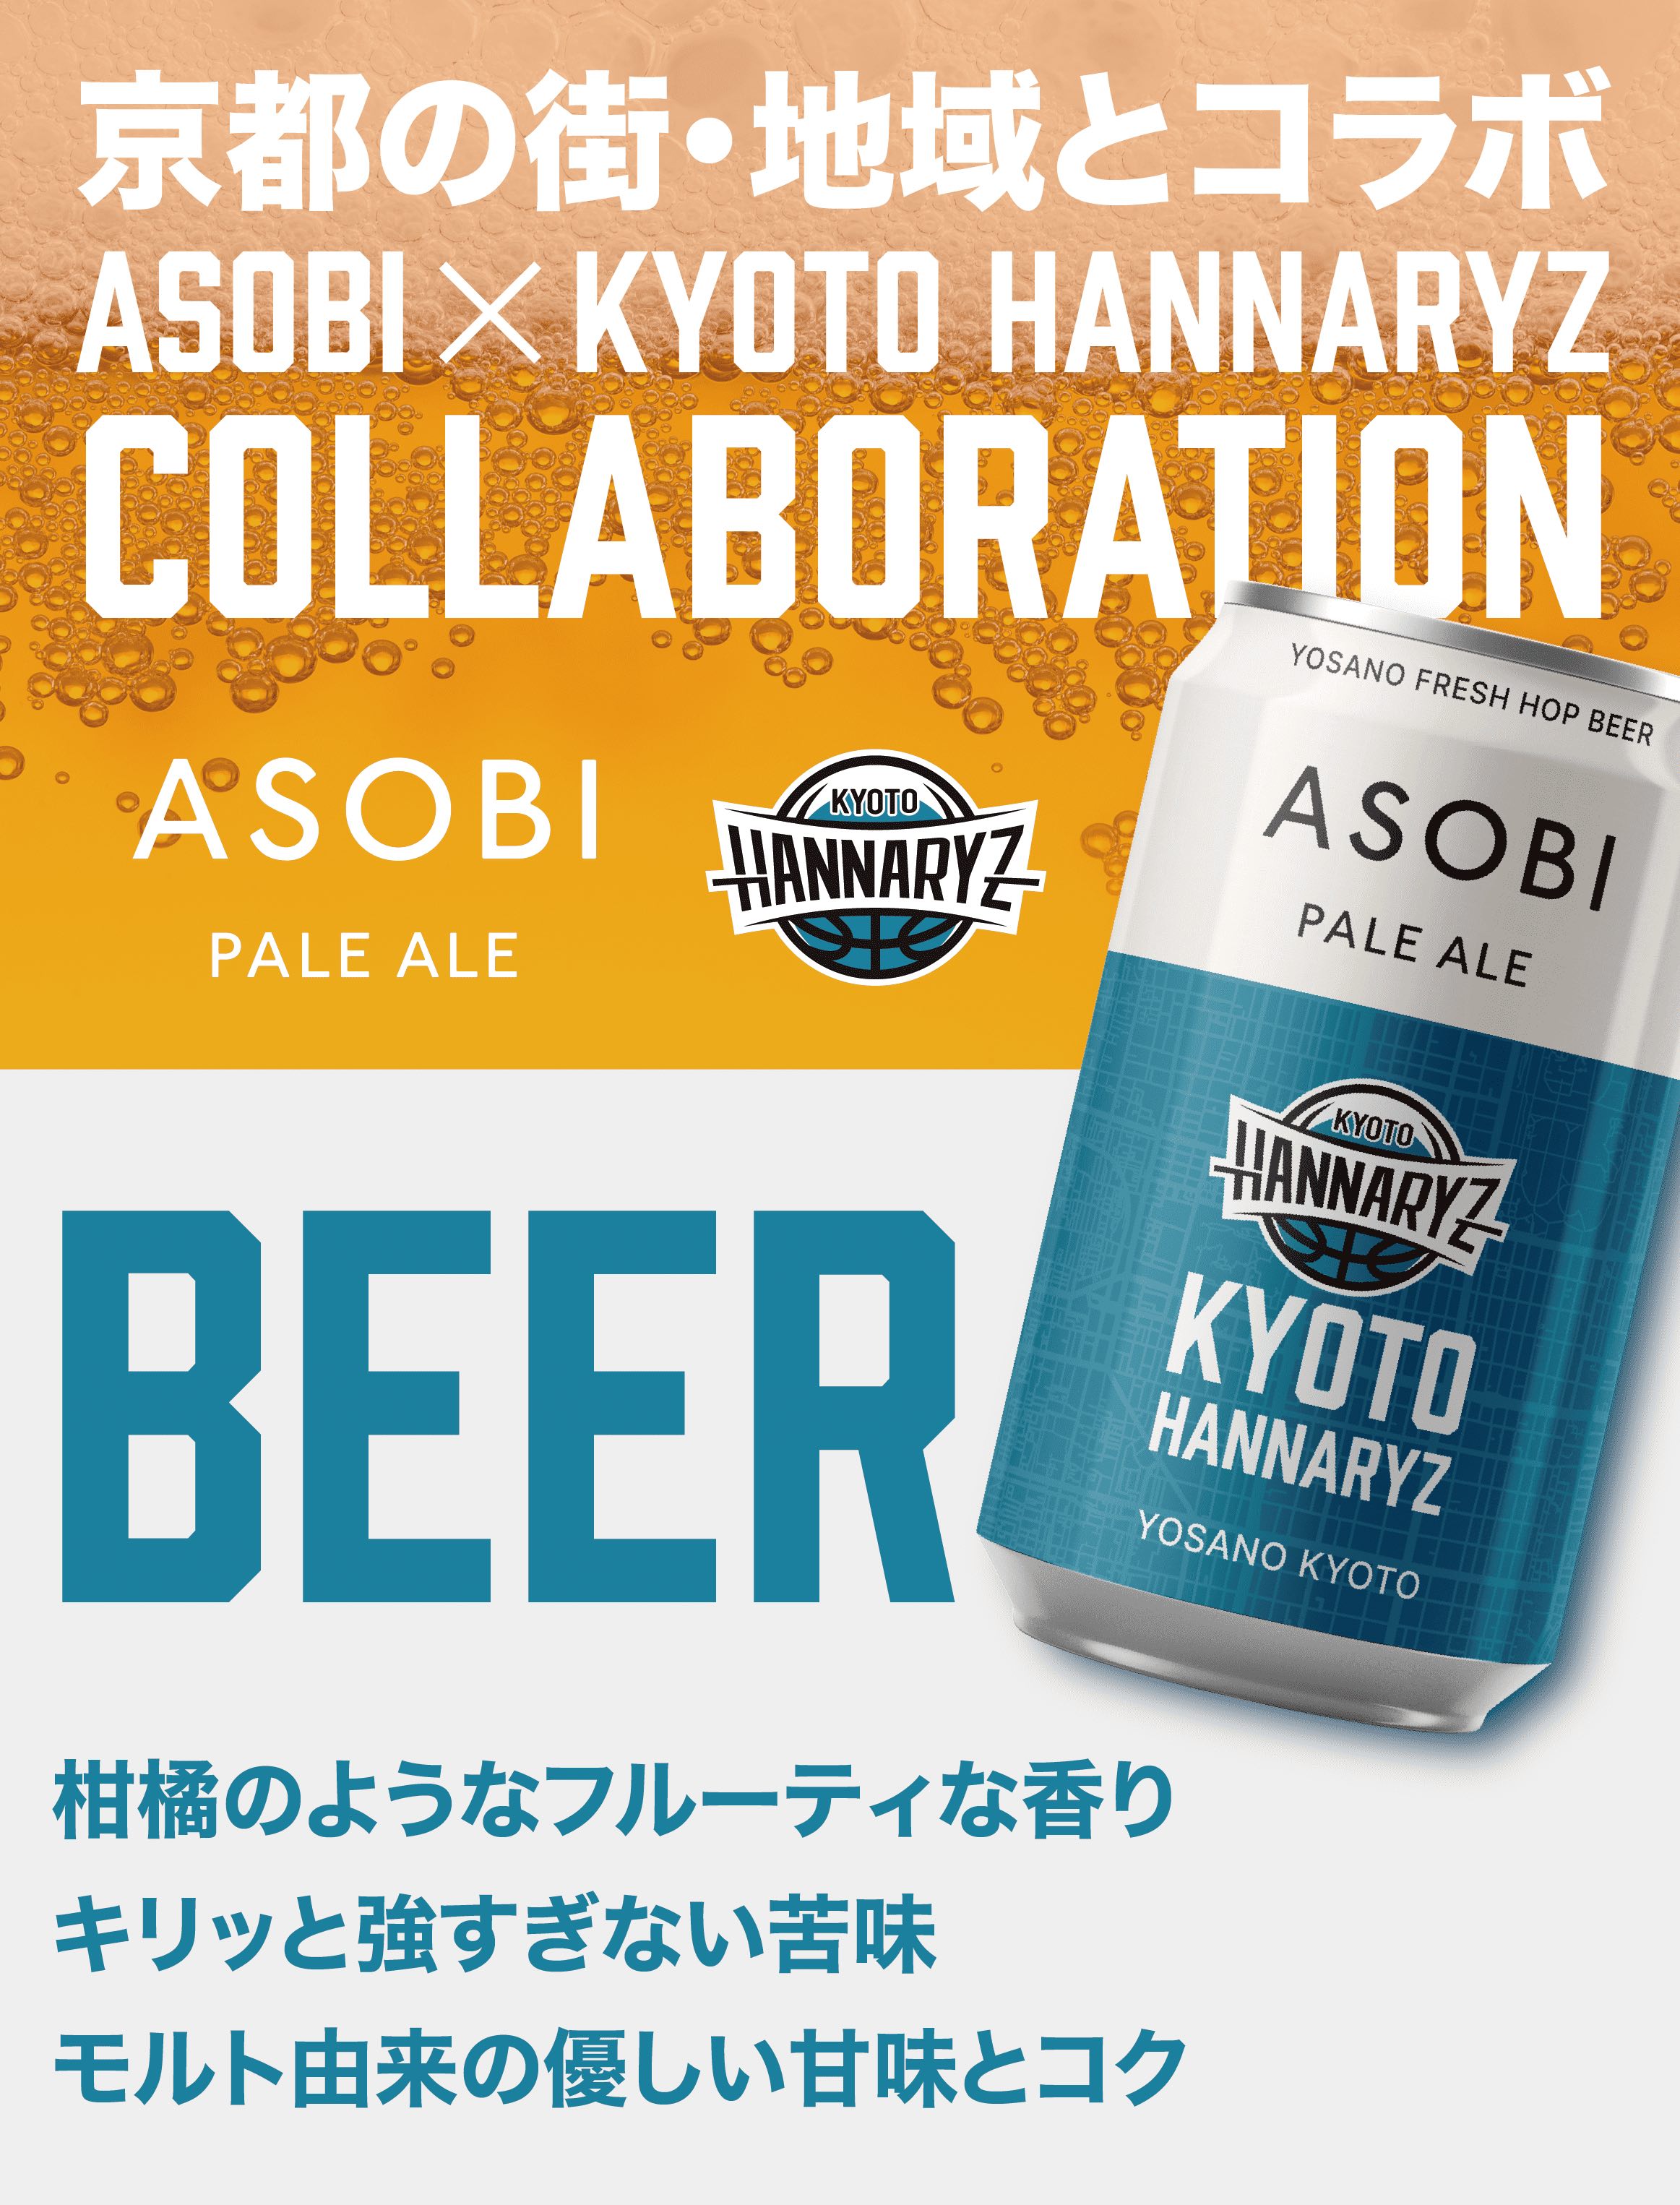 ASOBI - 京都ハンナリーズ COLLABORATION LABEL ビール 24本セット【送料無料】